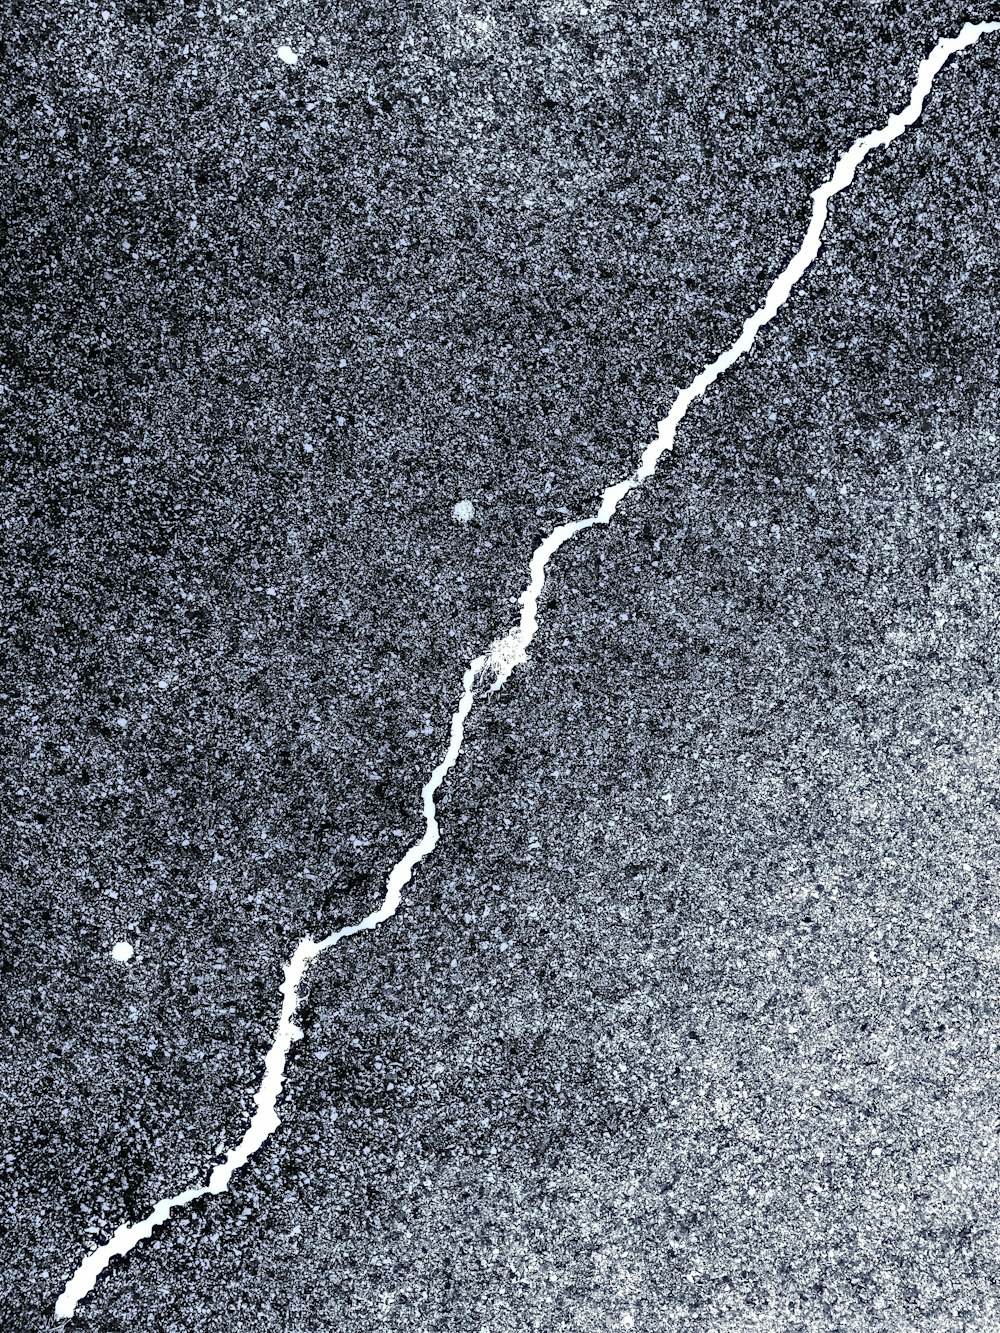 uma foto em preto e branco de uma rachadura no chão